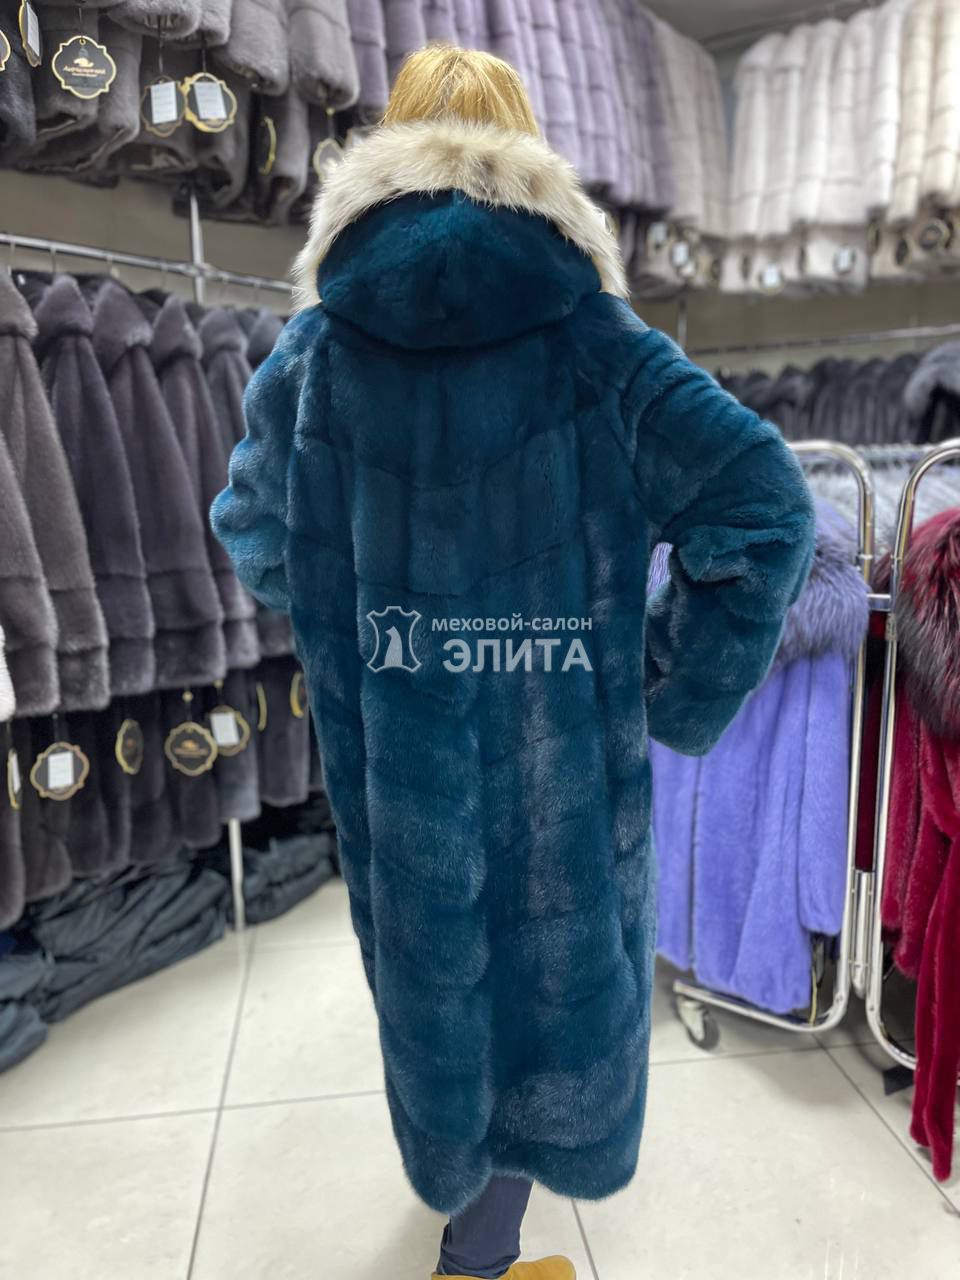 Пальто из норки S-80619 р-р 46-52, цена 171180 рублей в интернет-магазине кожи и меха ЭЛИТА. Вид 2